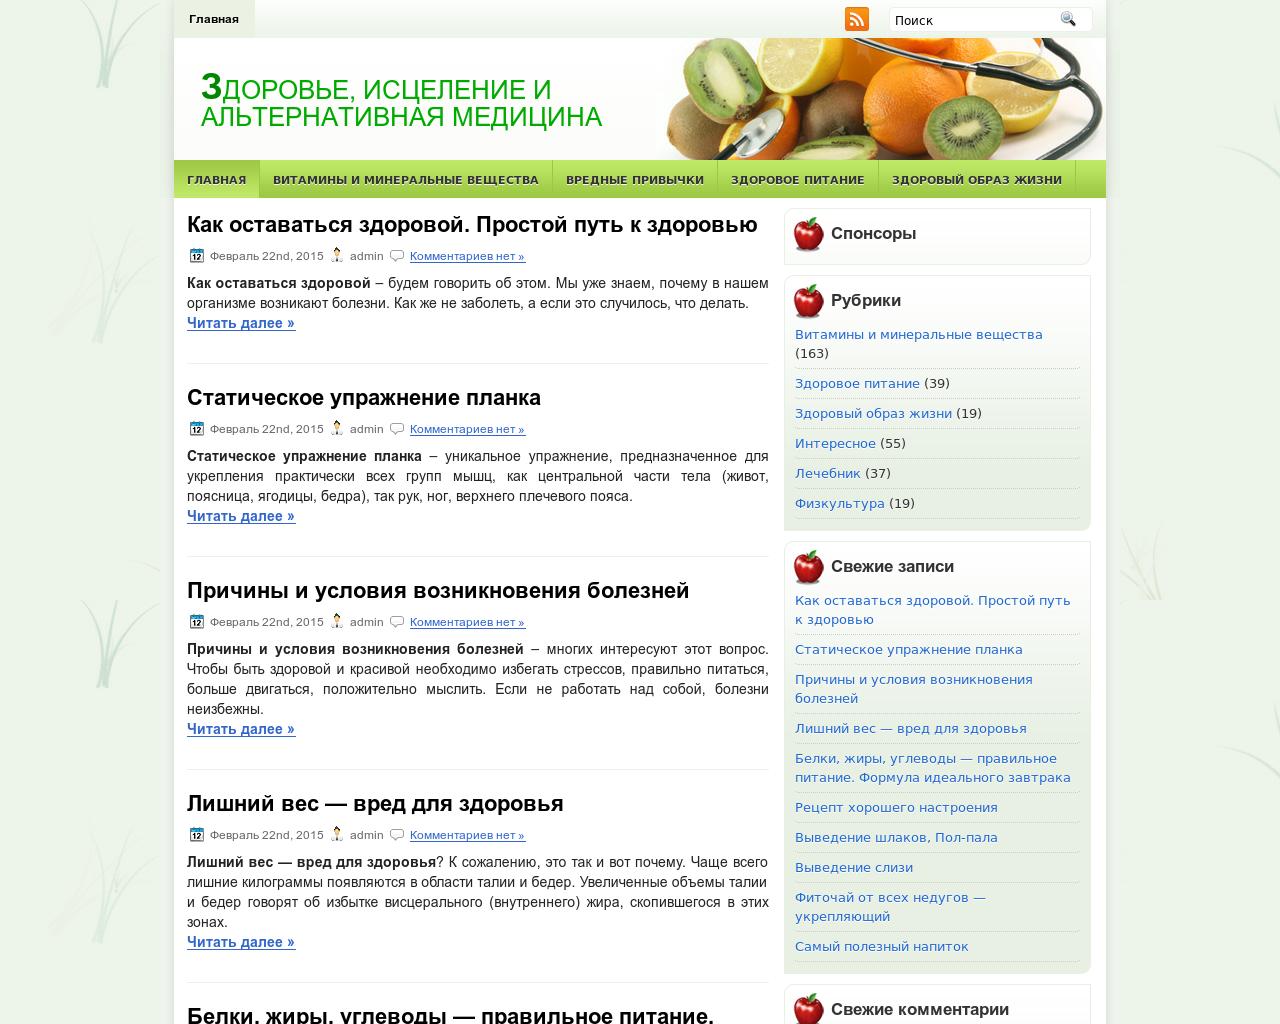 Изображение сайта 6med.ru в разрешении 1280x1024